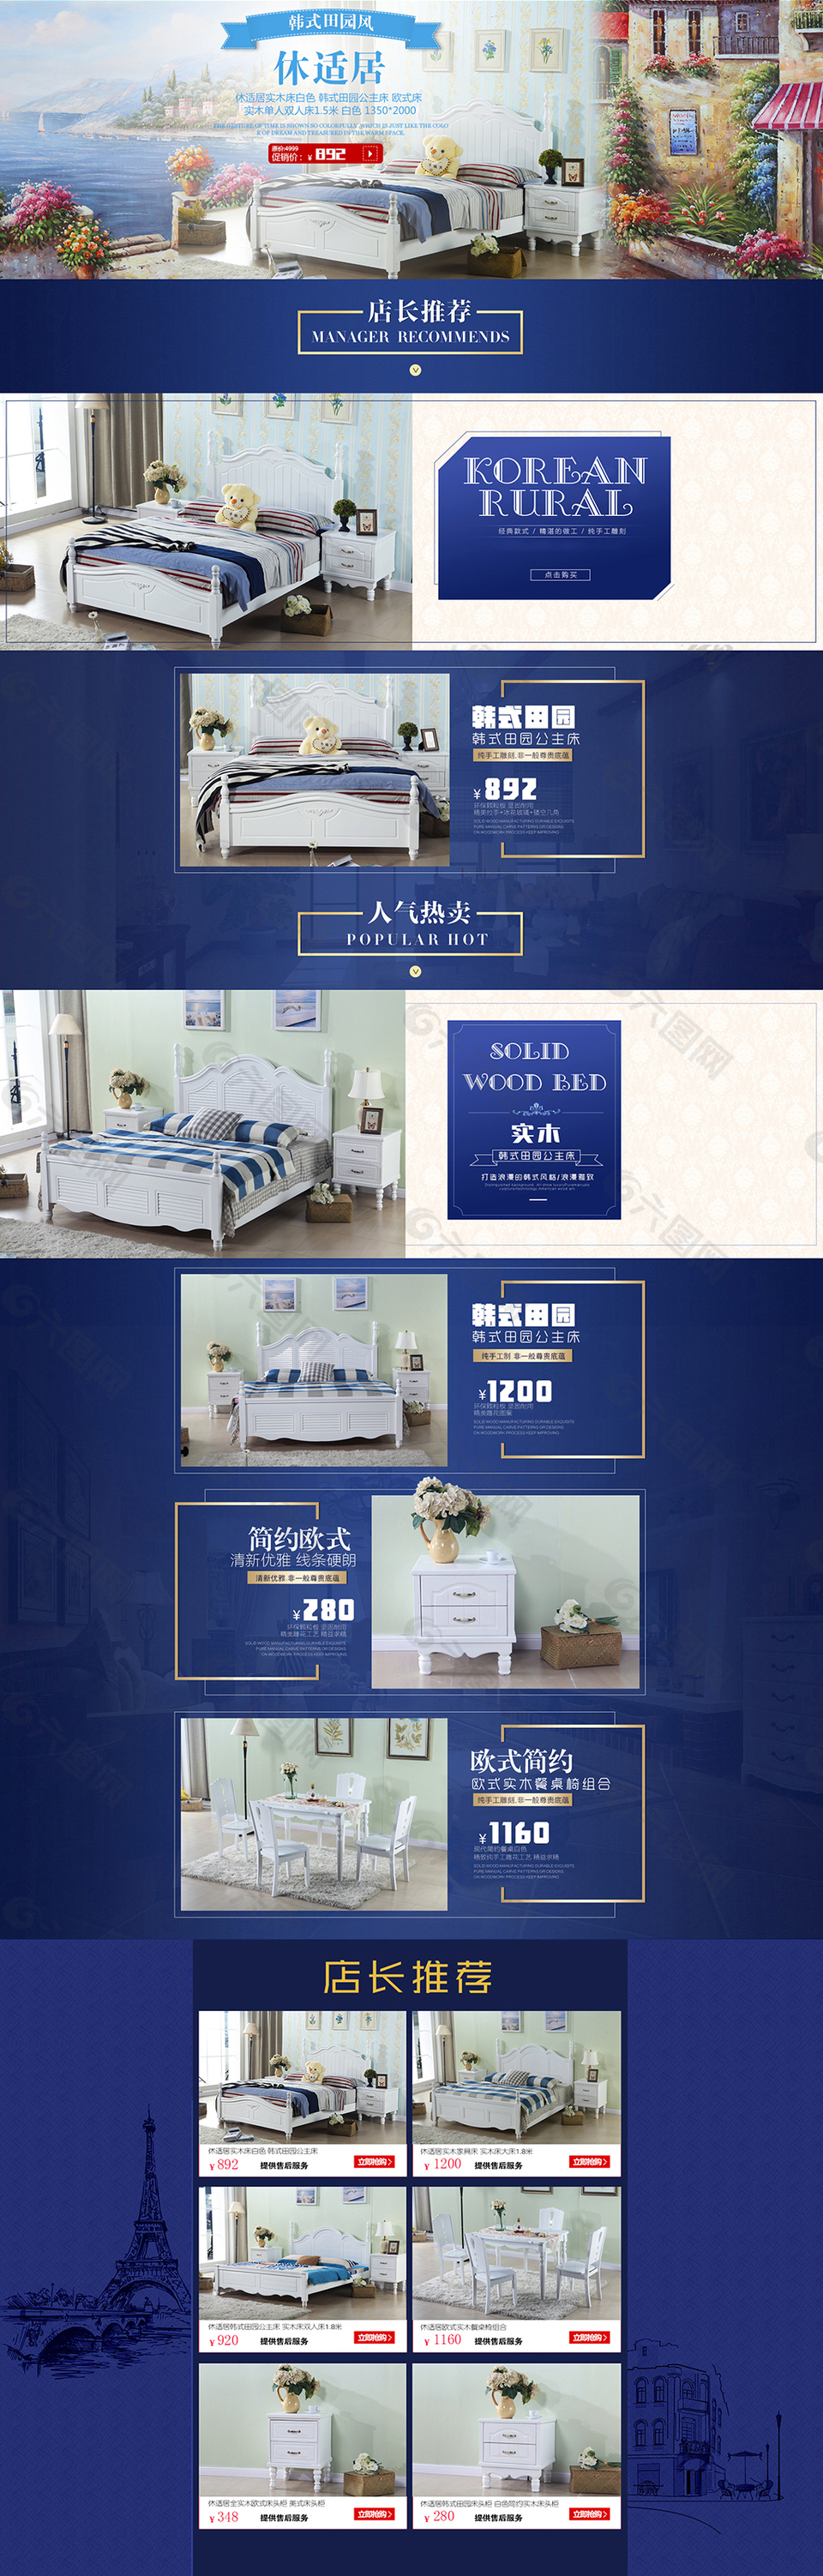 欧式家具 欧式床 蓝色简洁大气风格